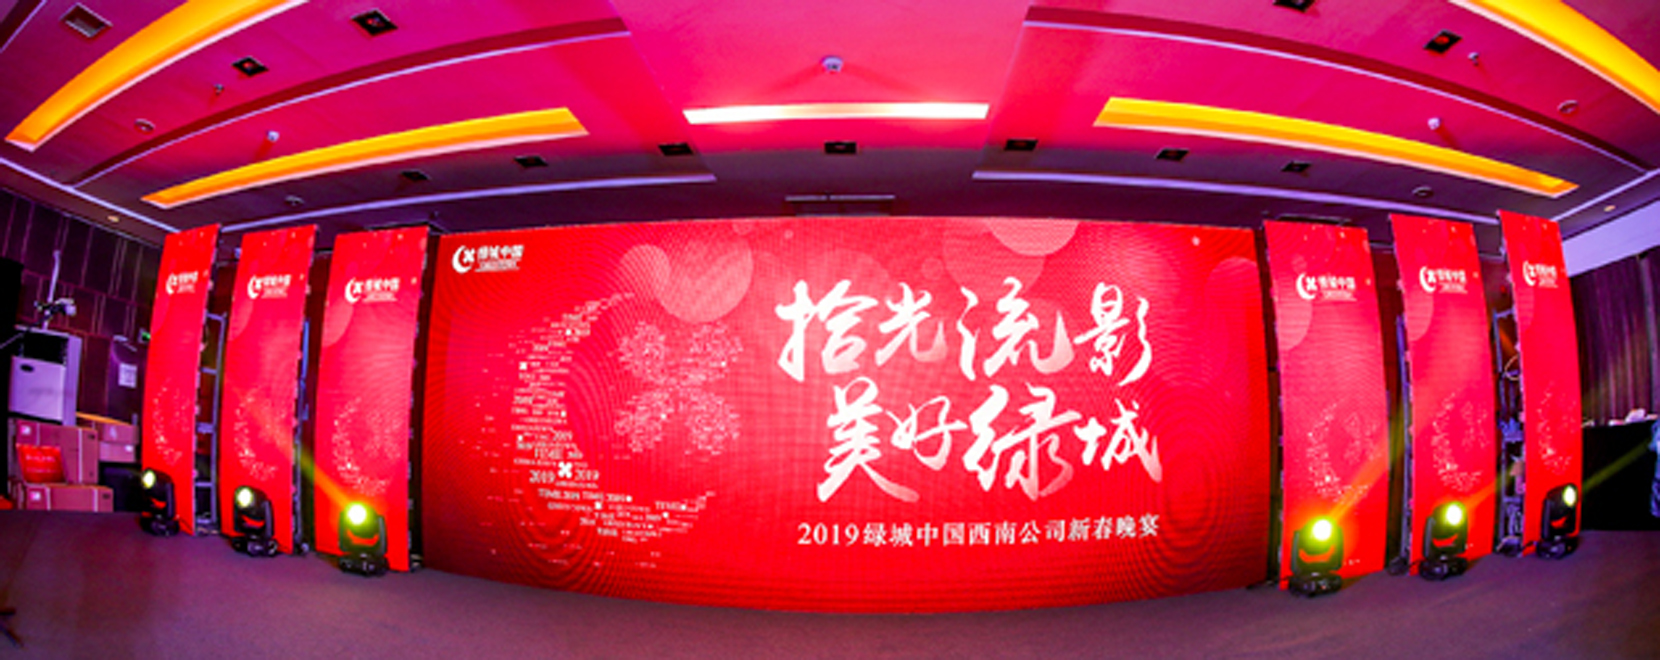 2019绿城中国西南公司新春晚宴活动拍摄及图片直播